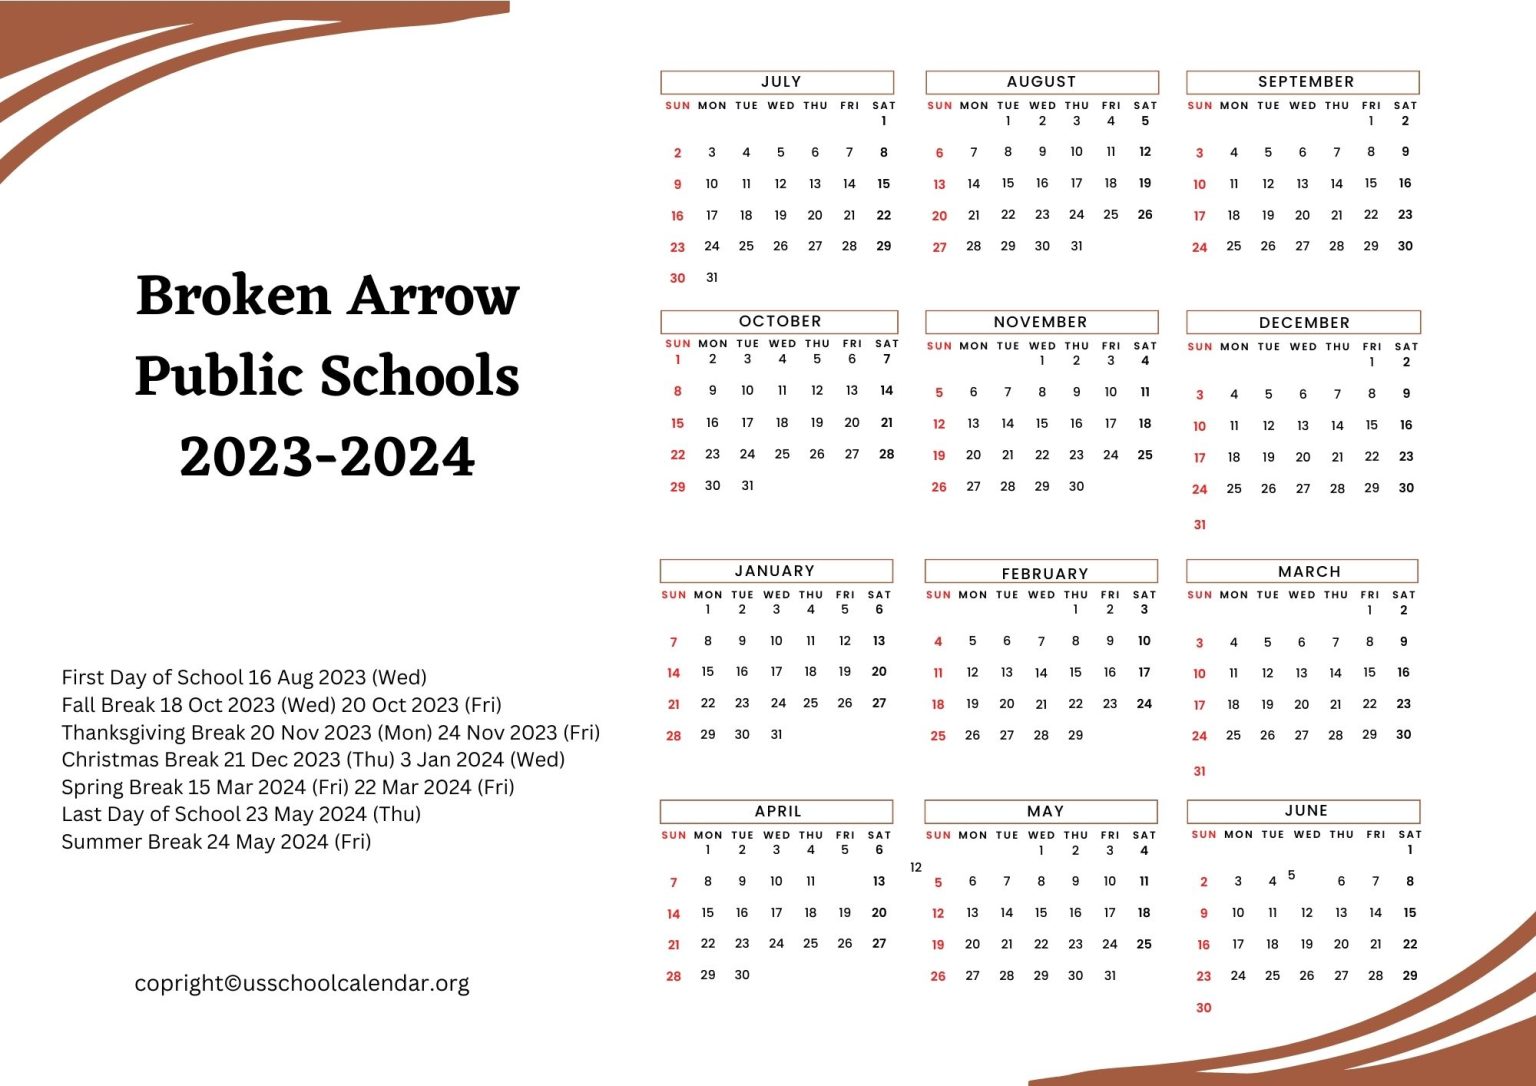 broken-arrow-public-schools-calendar-with-holidays-2023-2024